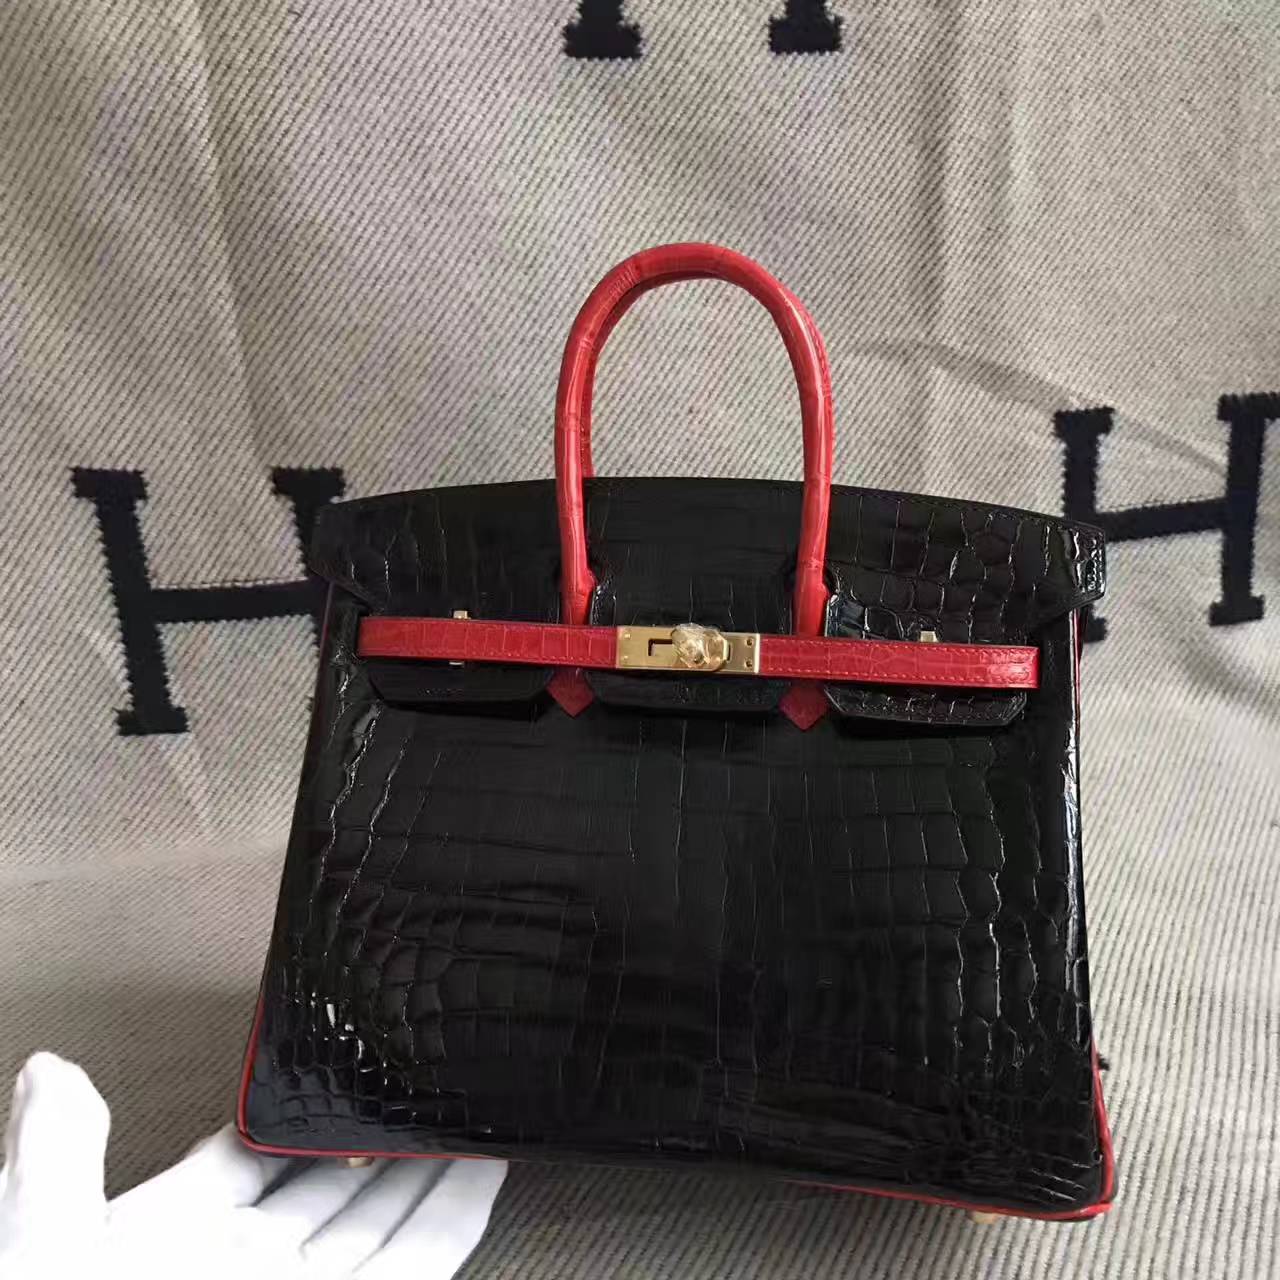 On Sale Hermes Birkin 25cm Bag in CK89 Black &#038; Braise Crocodile Leather